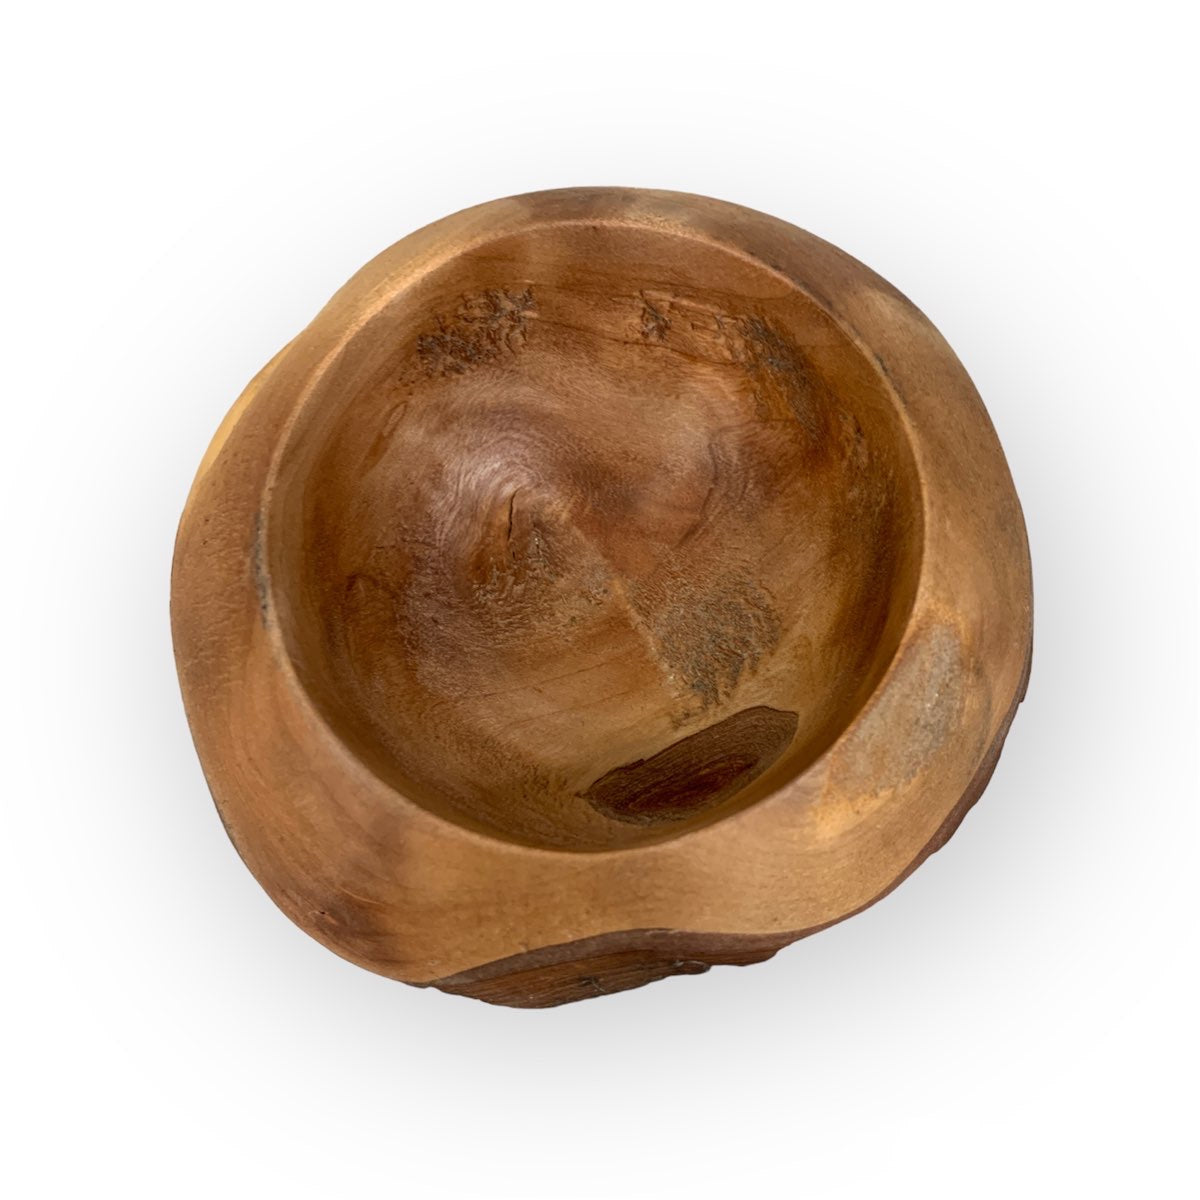 Small Wood Burl Bowl - Maple, II  by Jon Van Der Nol